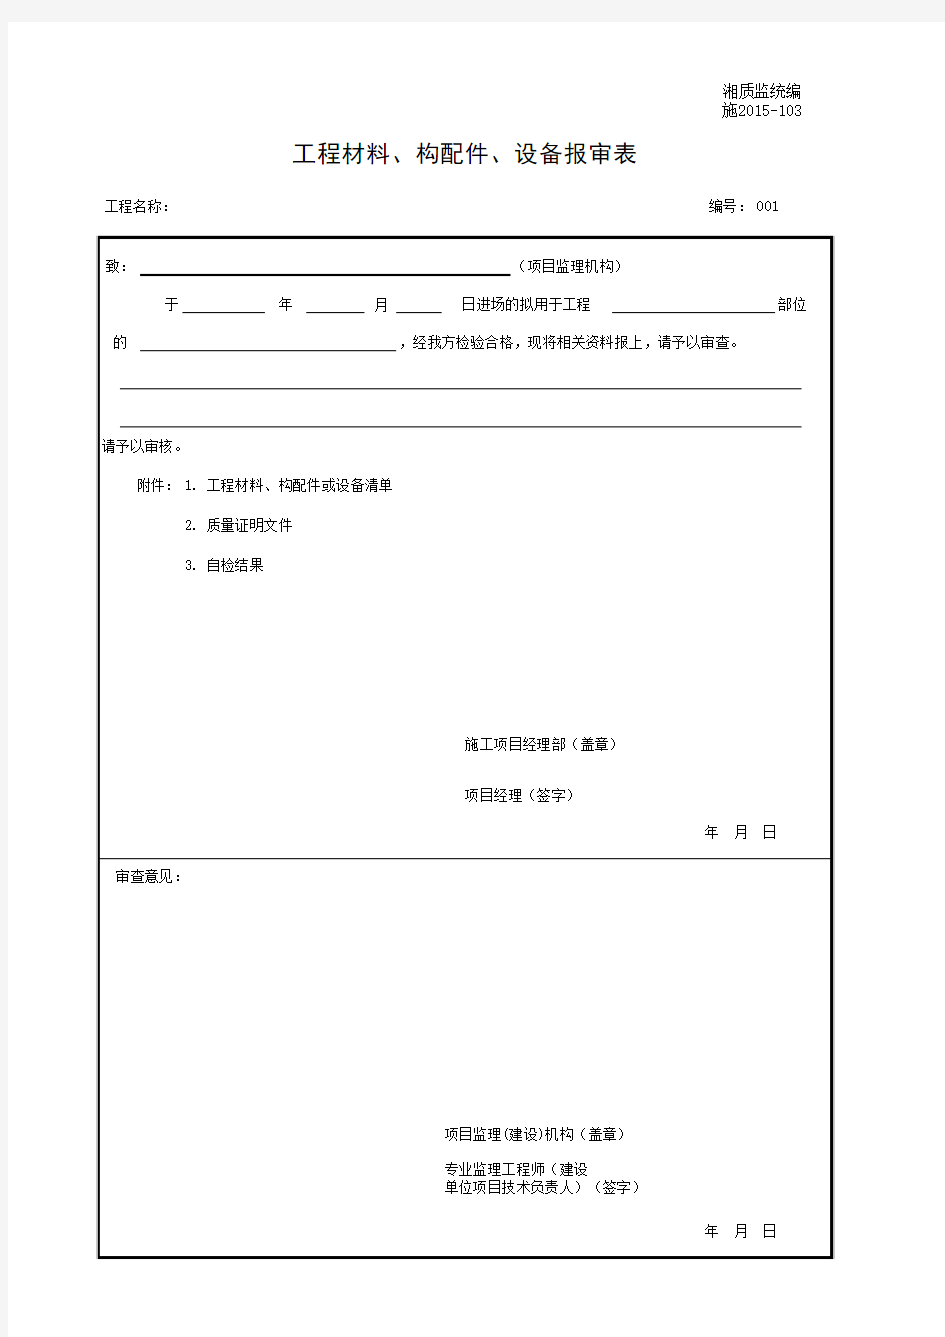 湘质监统编施2015-103工程材料、构配件、设备报审表